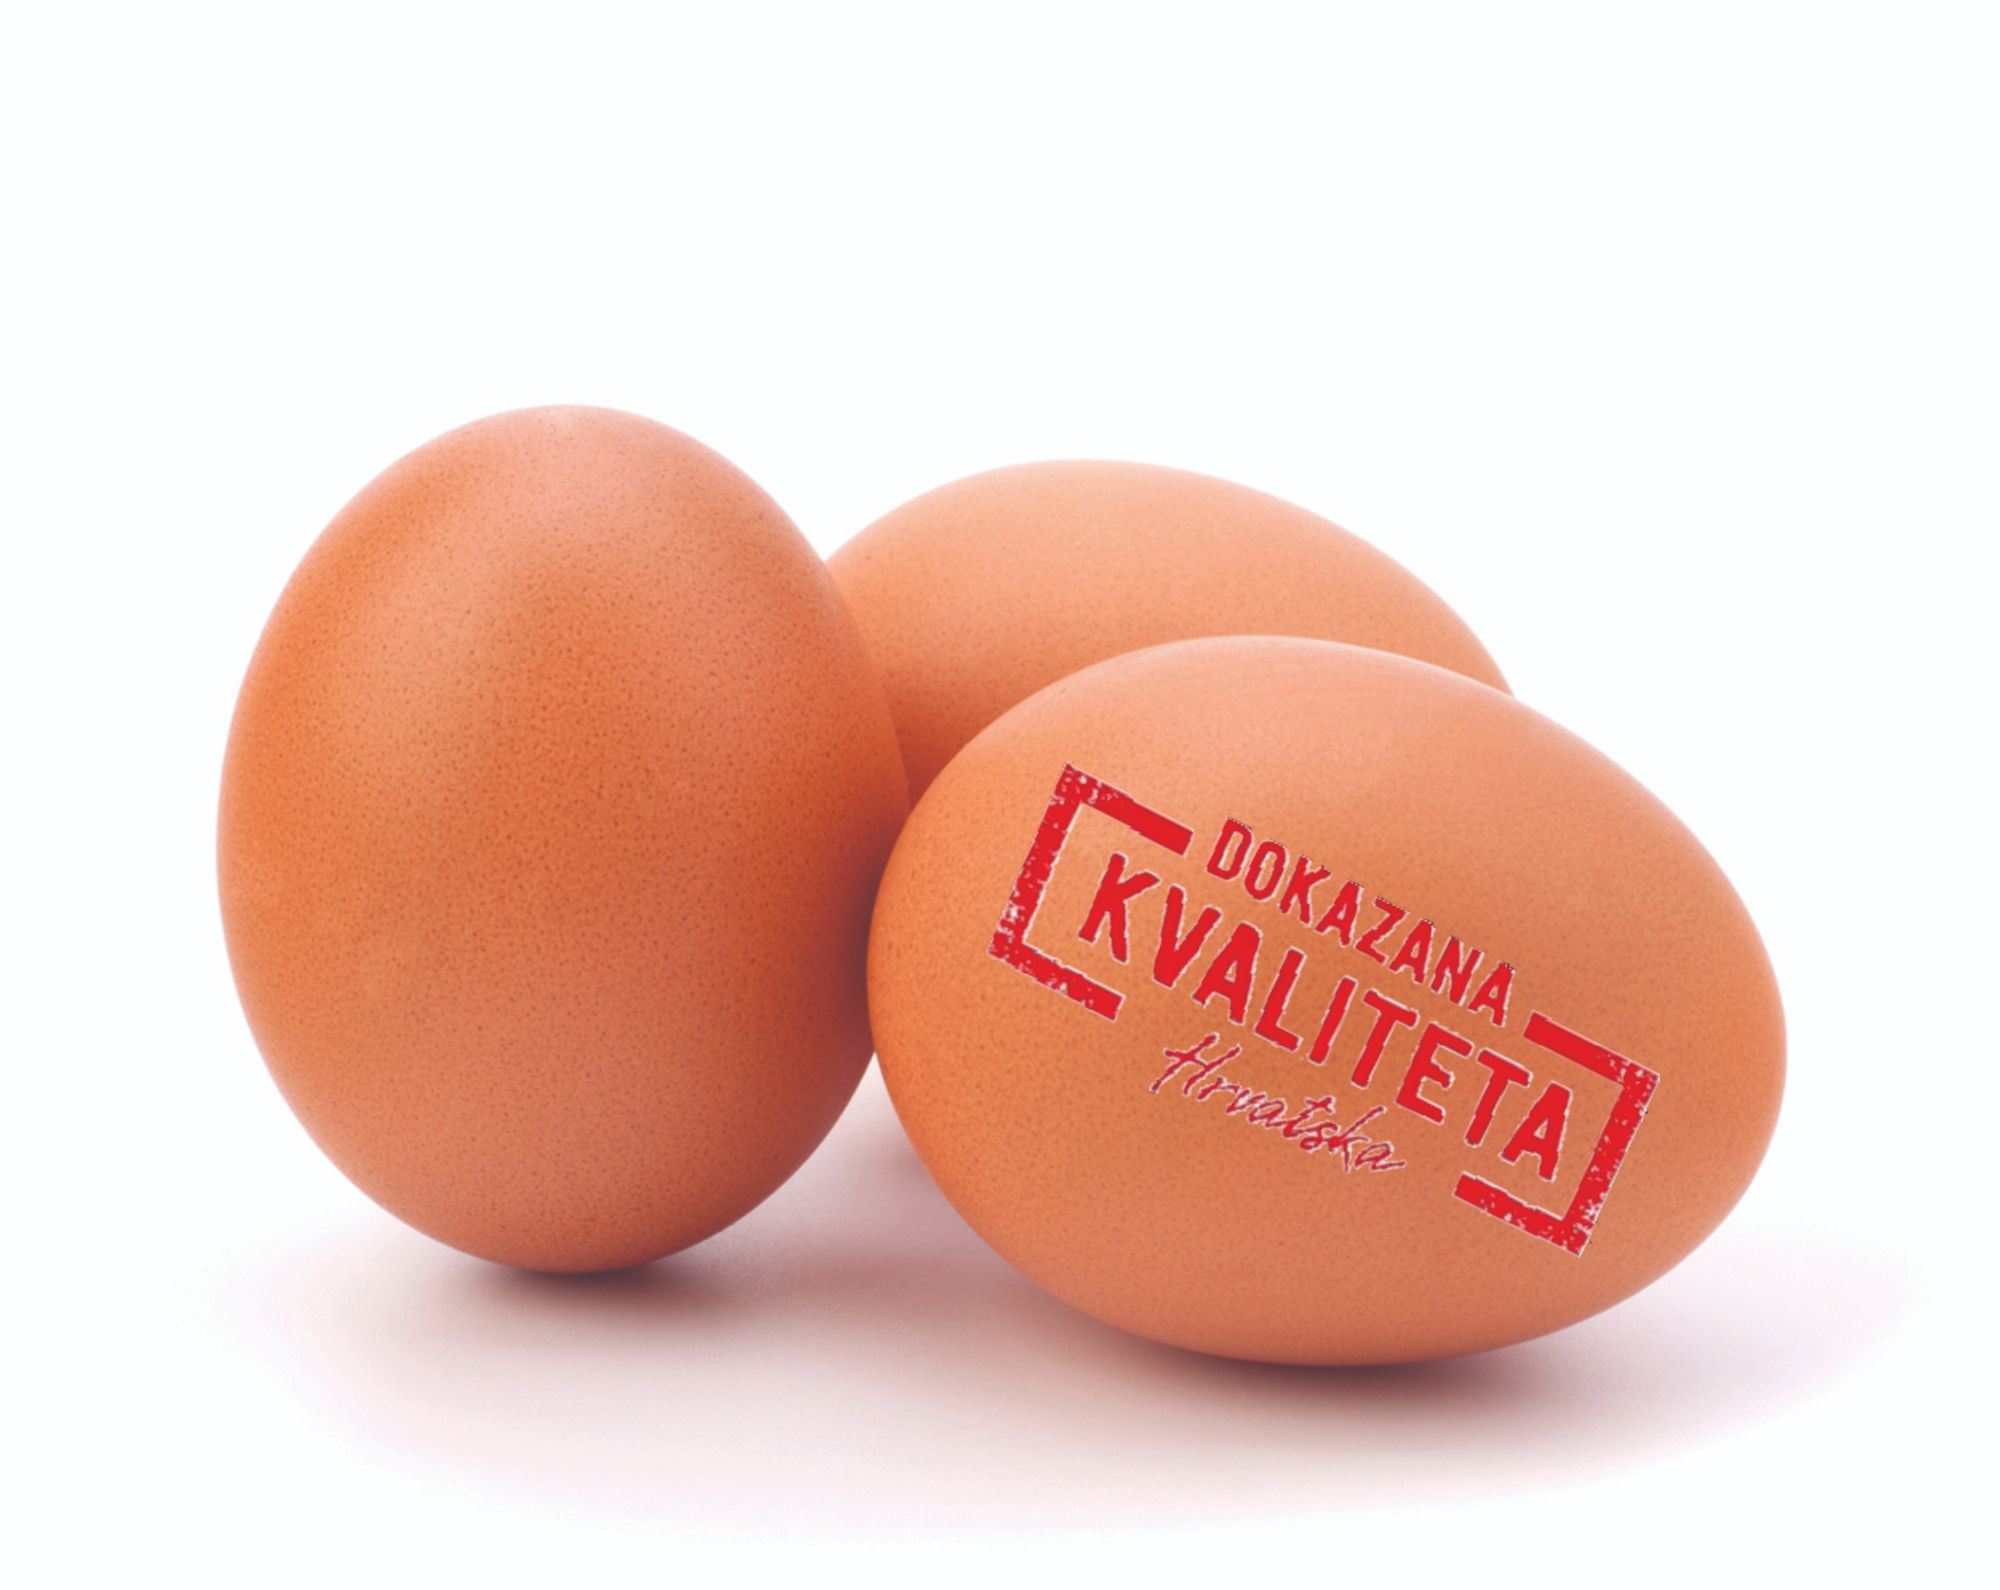 dokazana kvaliteta jaja